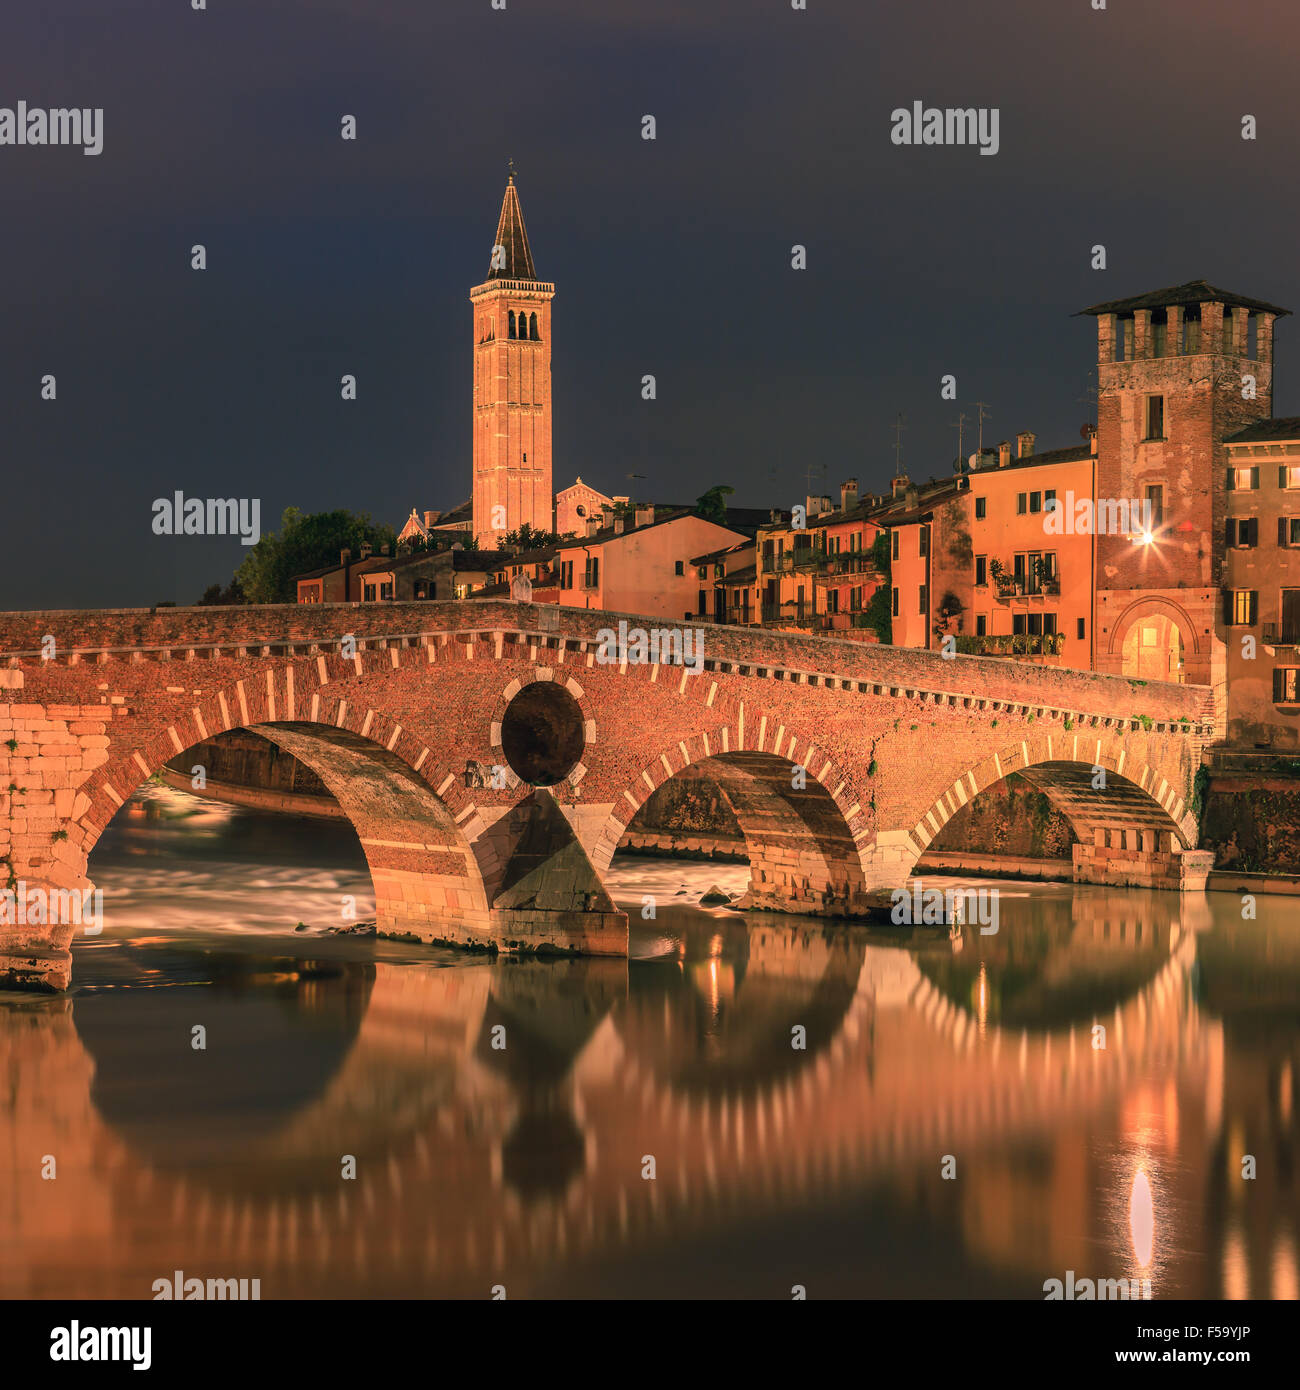 Puente Puente Pietra al atardecer sobre el río Adige en Verona, Italia Foto de stock